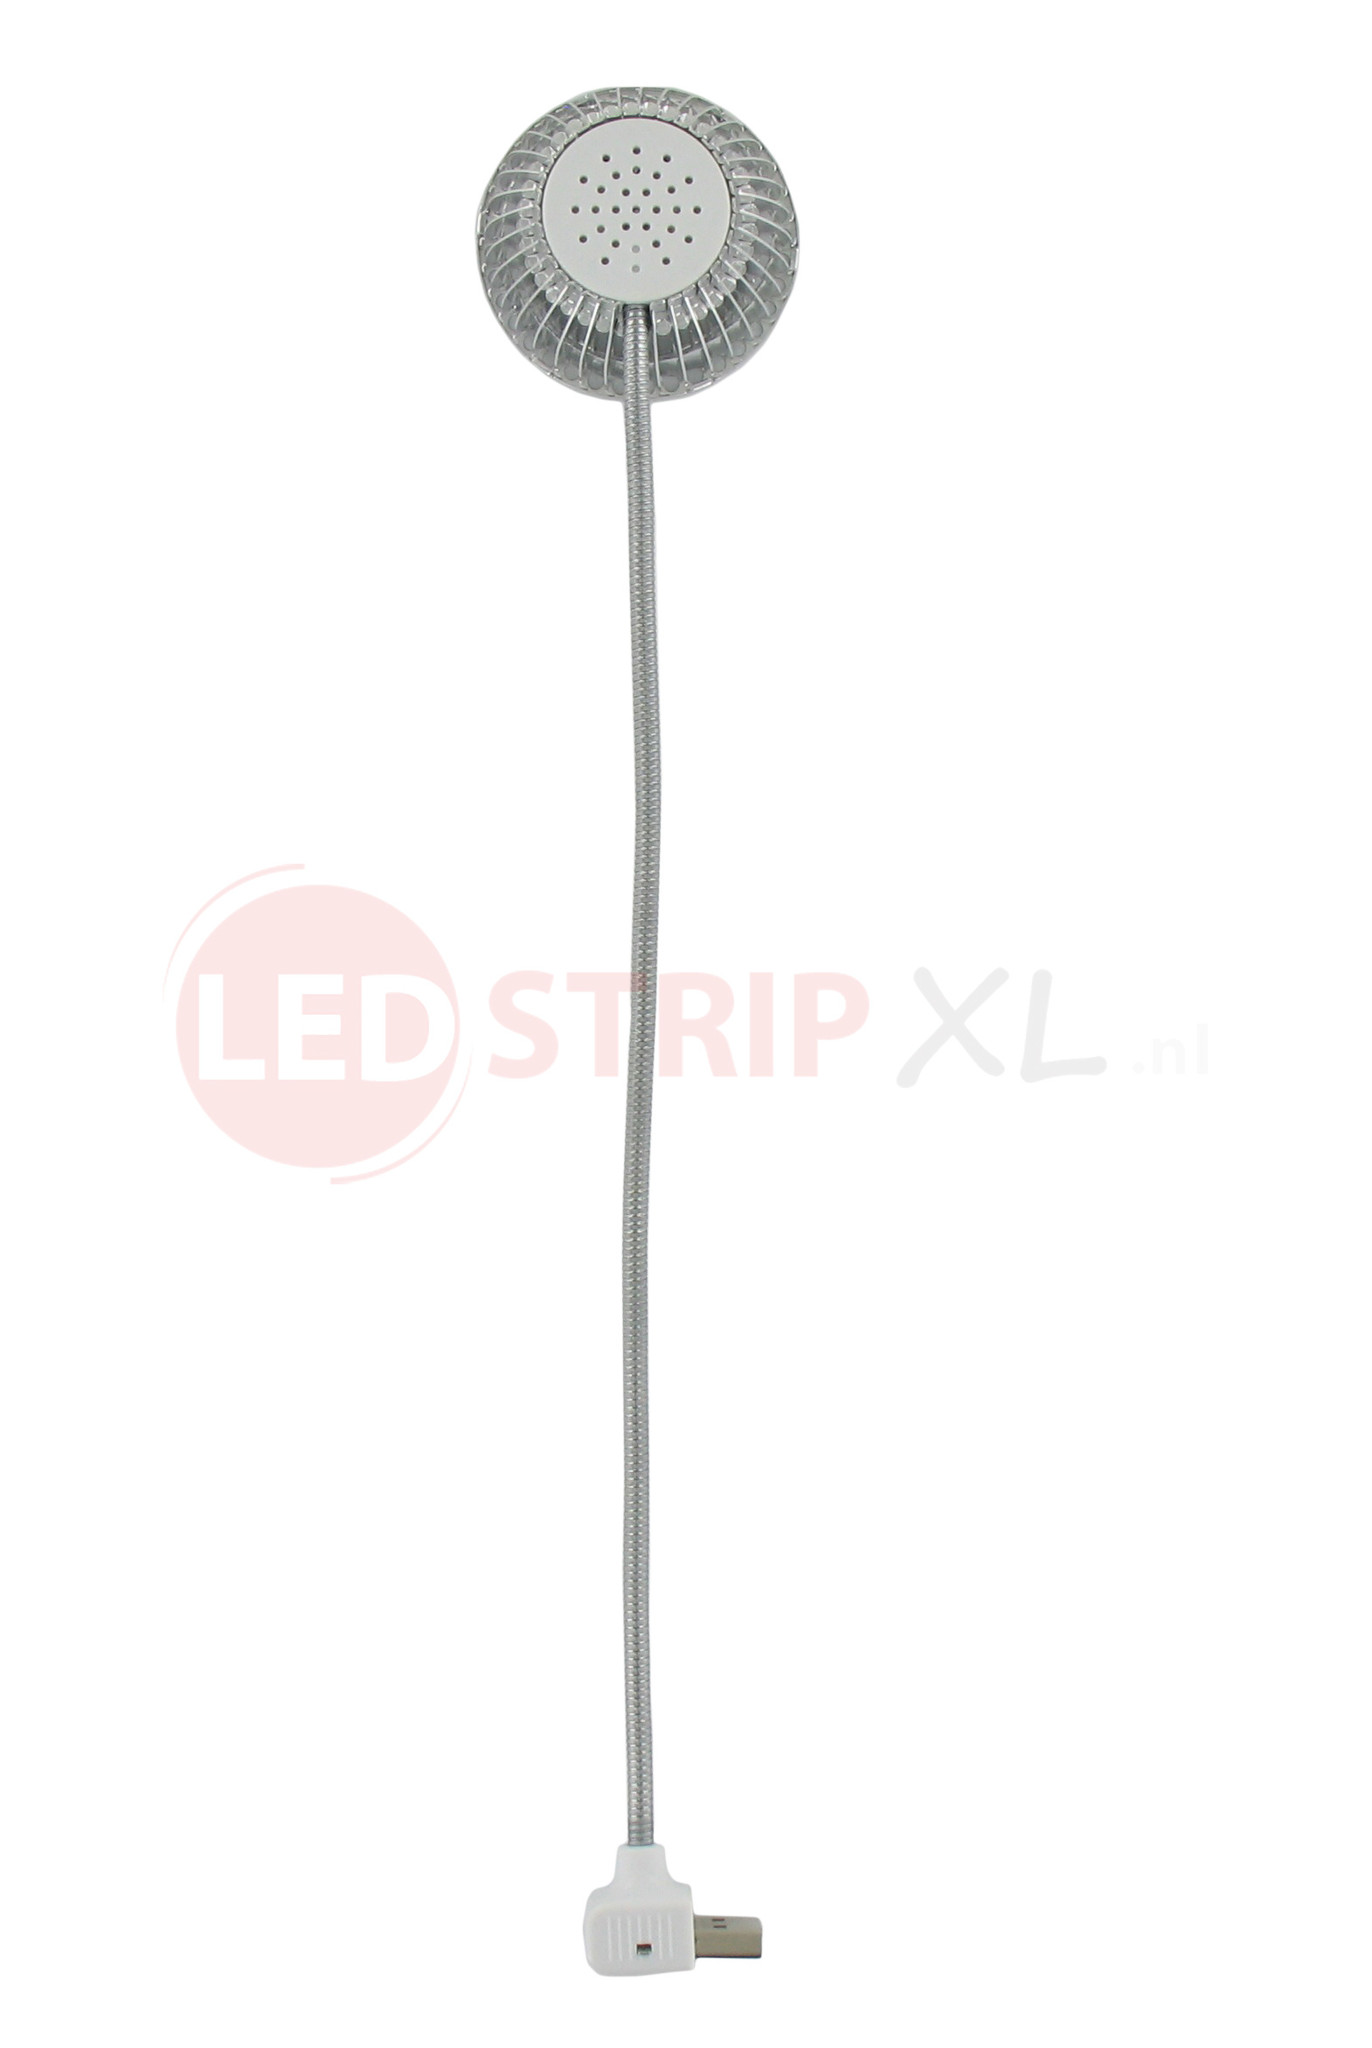 Gelach Vooruitzien Instrument USB mini LED-lampje / leeslampje - helder wit - spiraalkabel - LEDStripXL